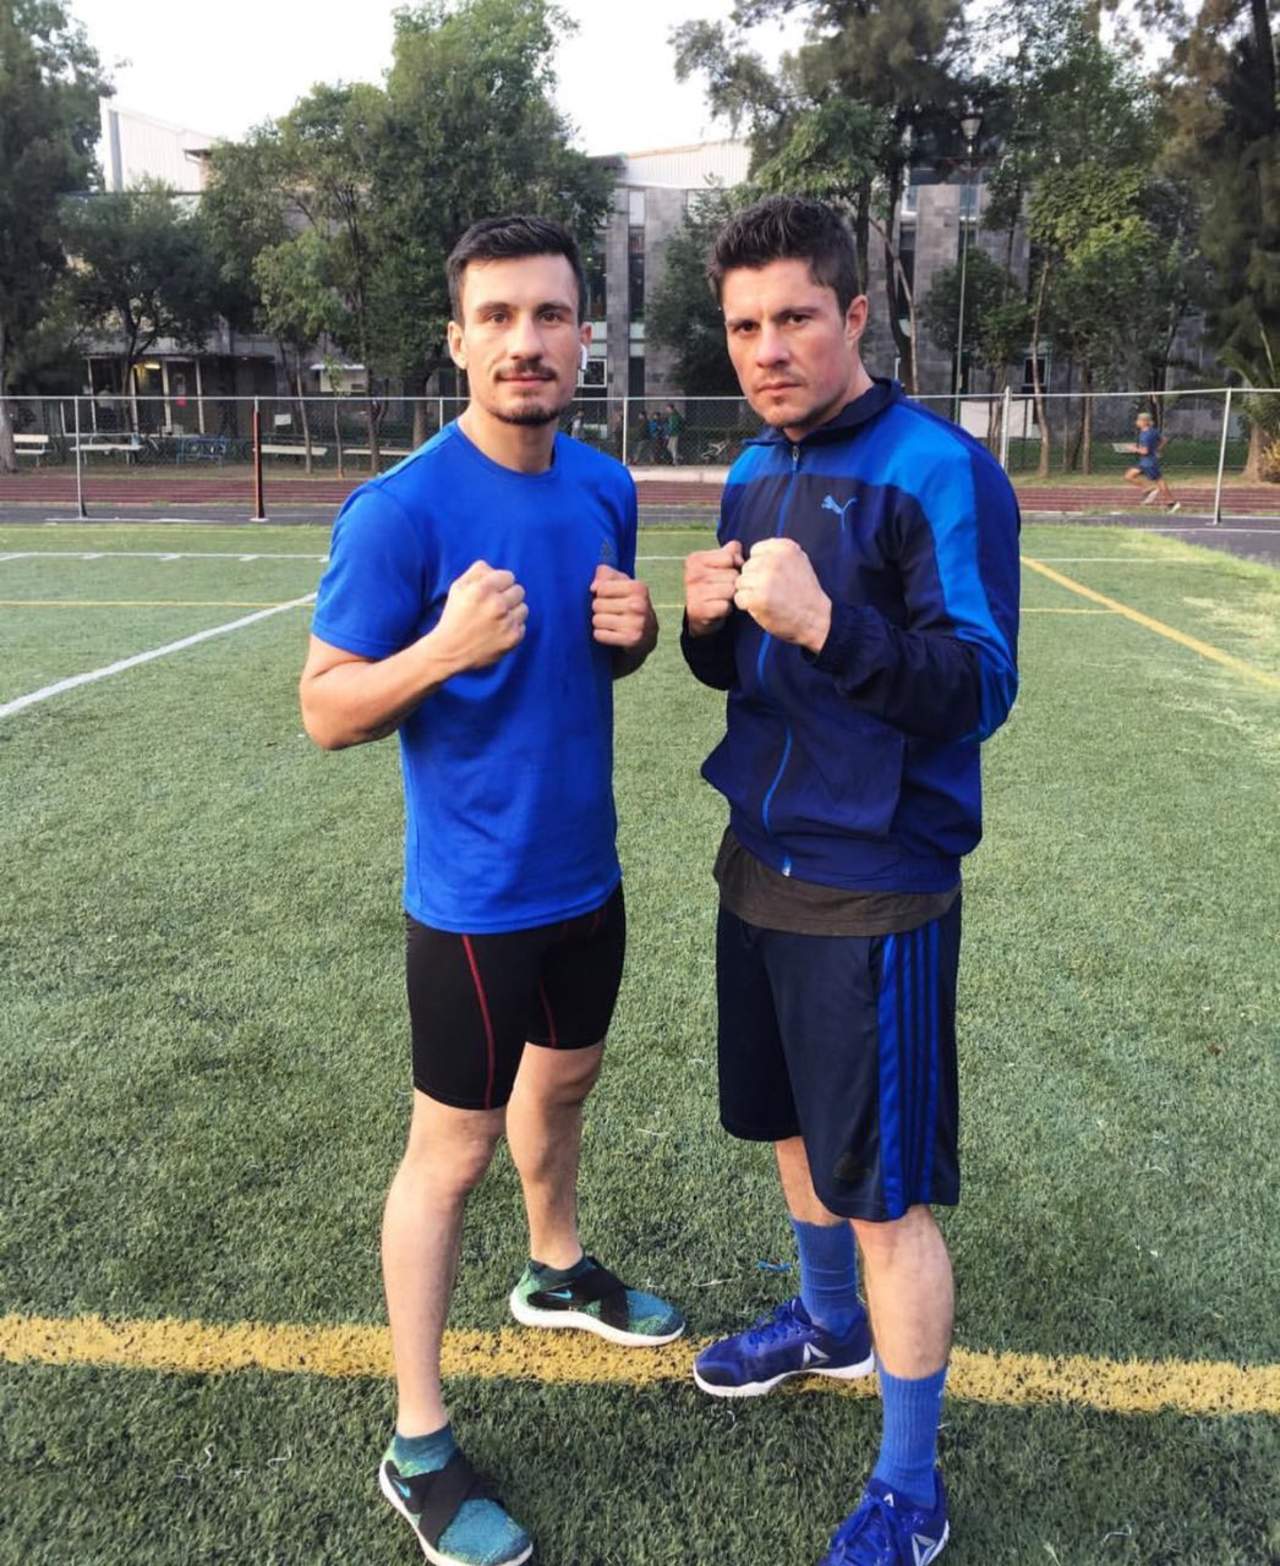 Los hermanos Ortiz estarán presentes en la función de box que protagonizarán el “Canelo” Álvarez y Golovkin, el 15 de septiembre.